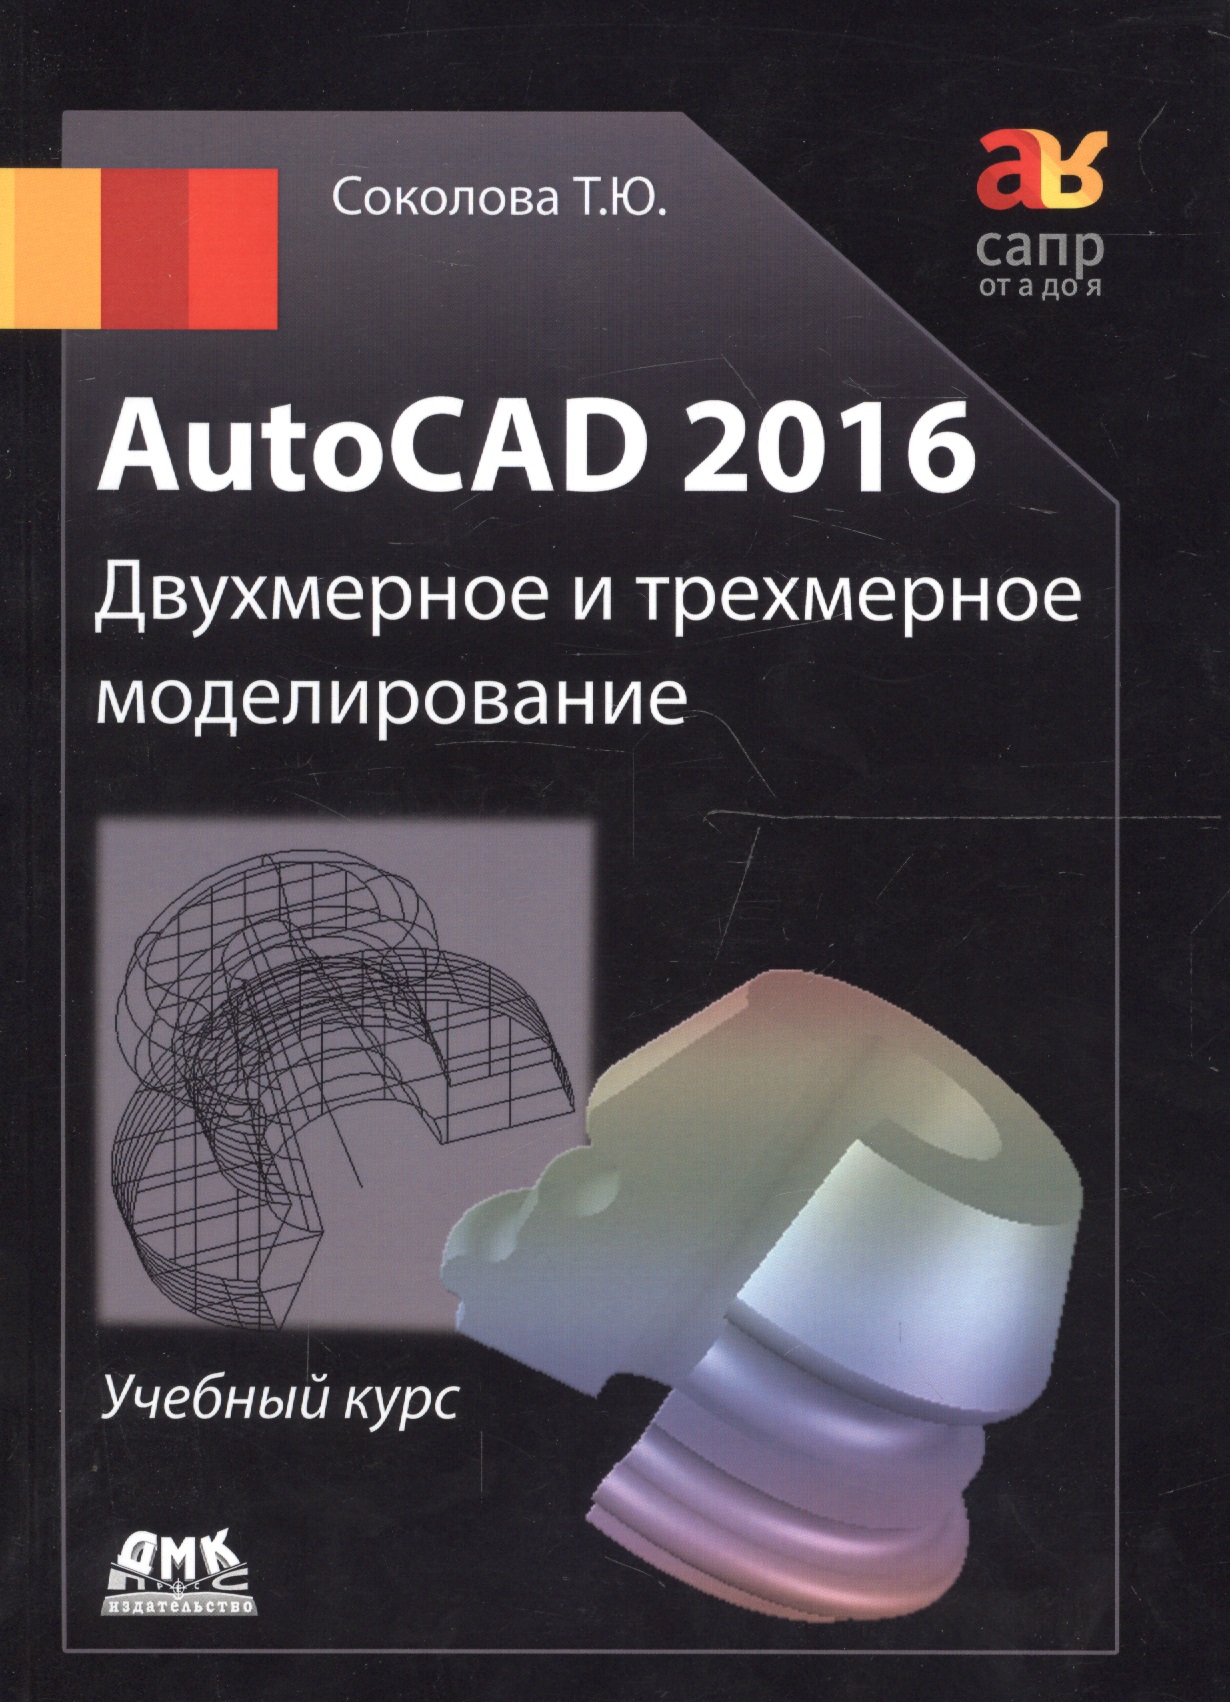 AutoCAD 2016/ Двухмерное и трехмерное моделирование. Учебный курс соколова татьяна юрьевна autocad 2016 двухмерное и трехмерное моделирование учебный курс